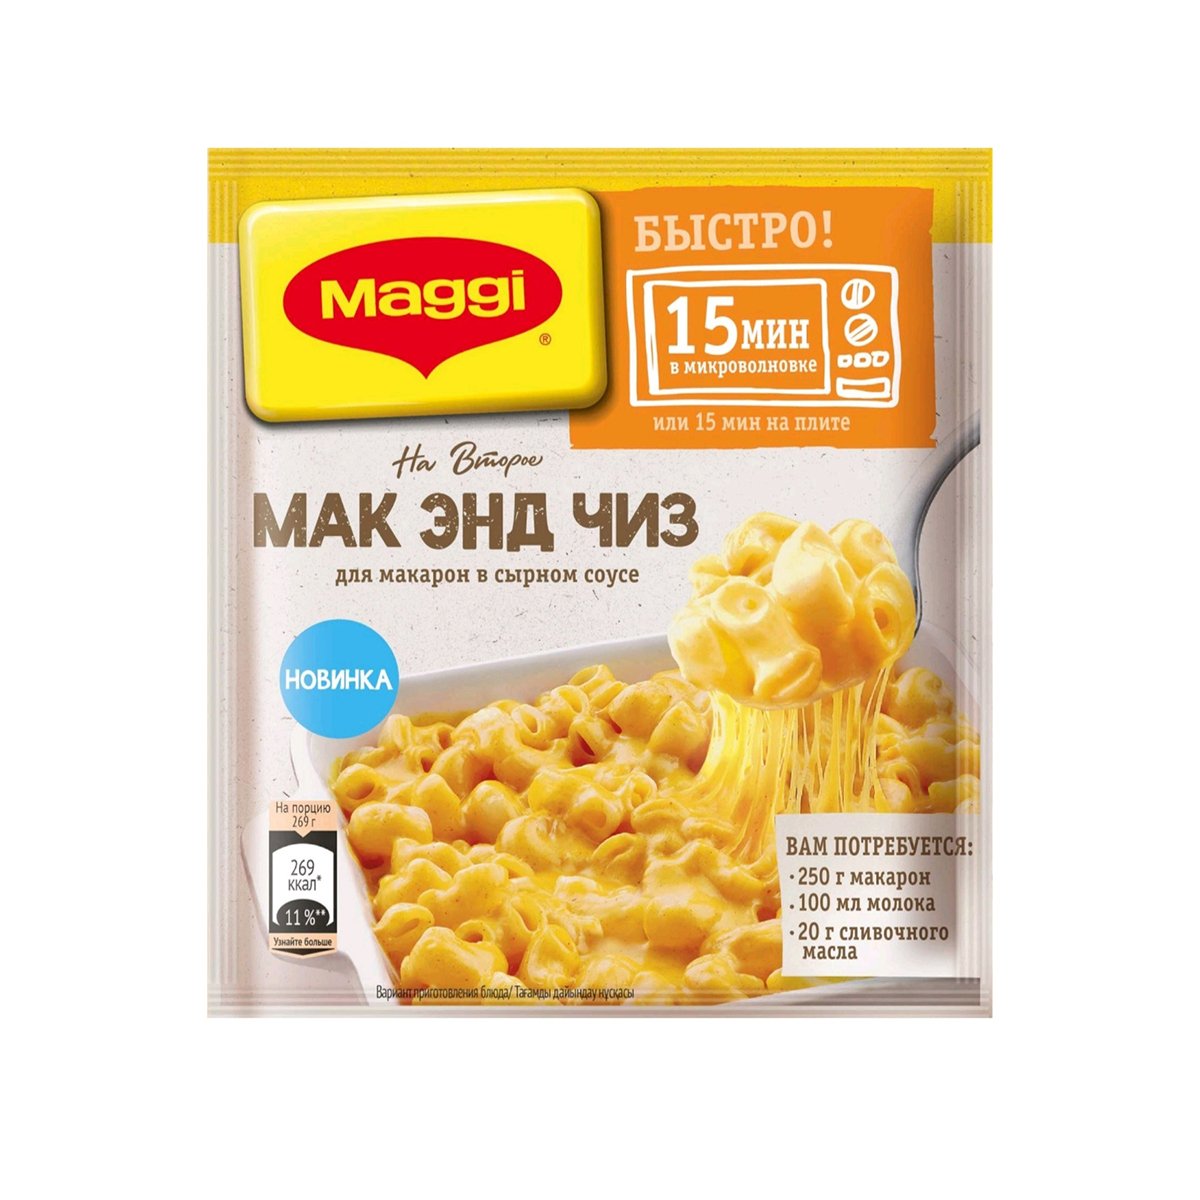 Смесь Магги На Второе для макарон в сырном соусе Мак и Чиз 26г - интернет-магазин Близнецы